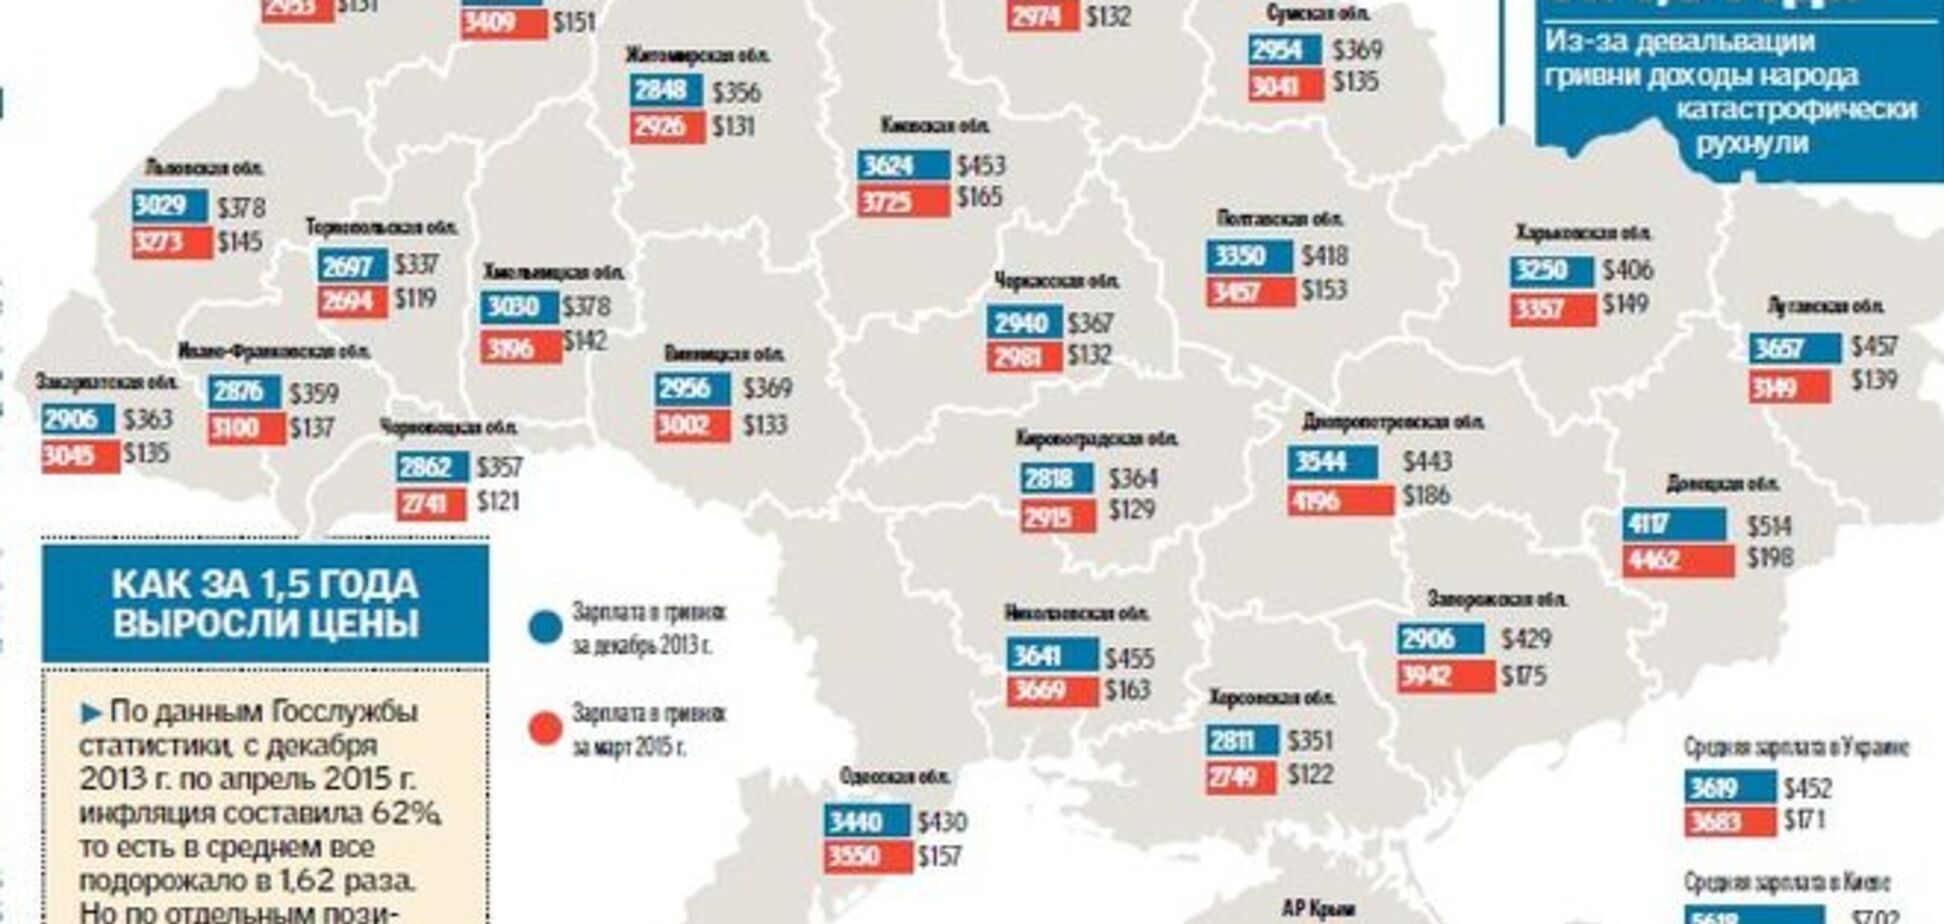 Зарплата украинца в день равна зарплате американца в час: инфографика